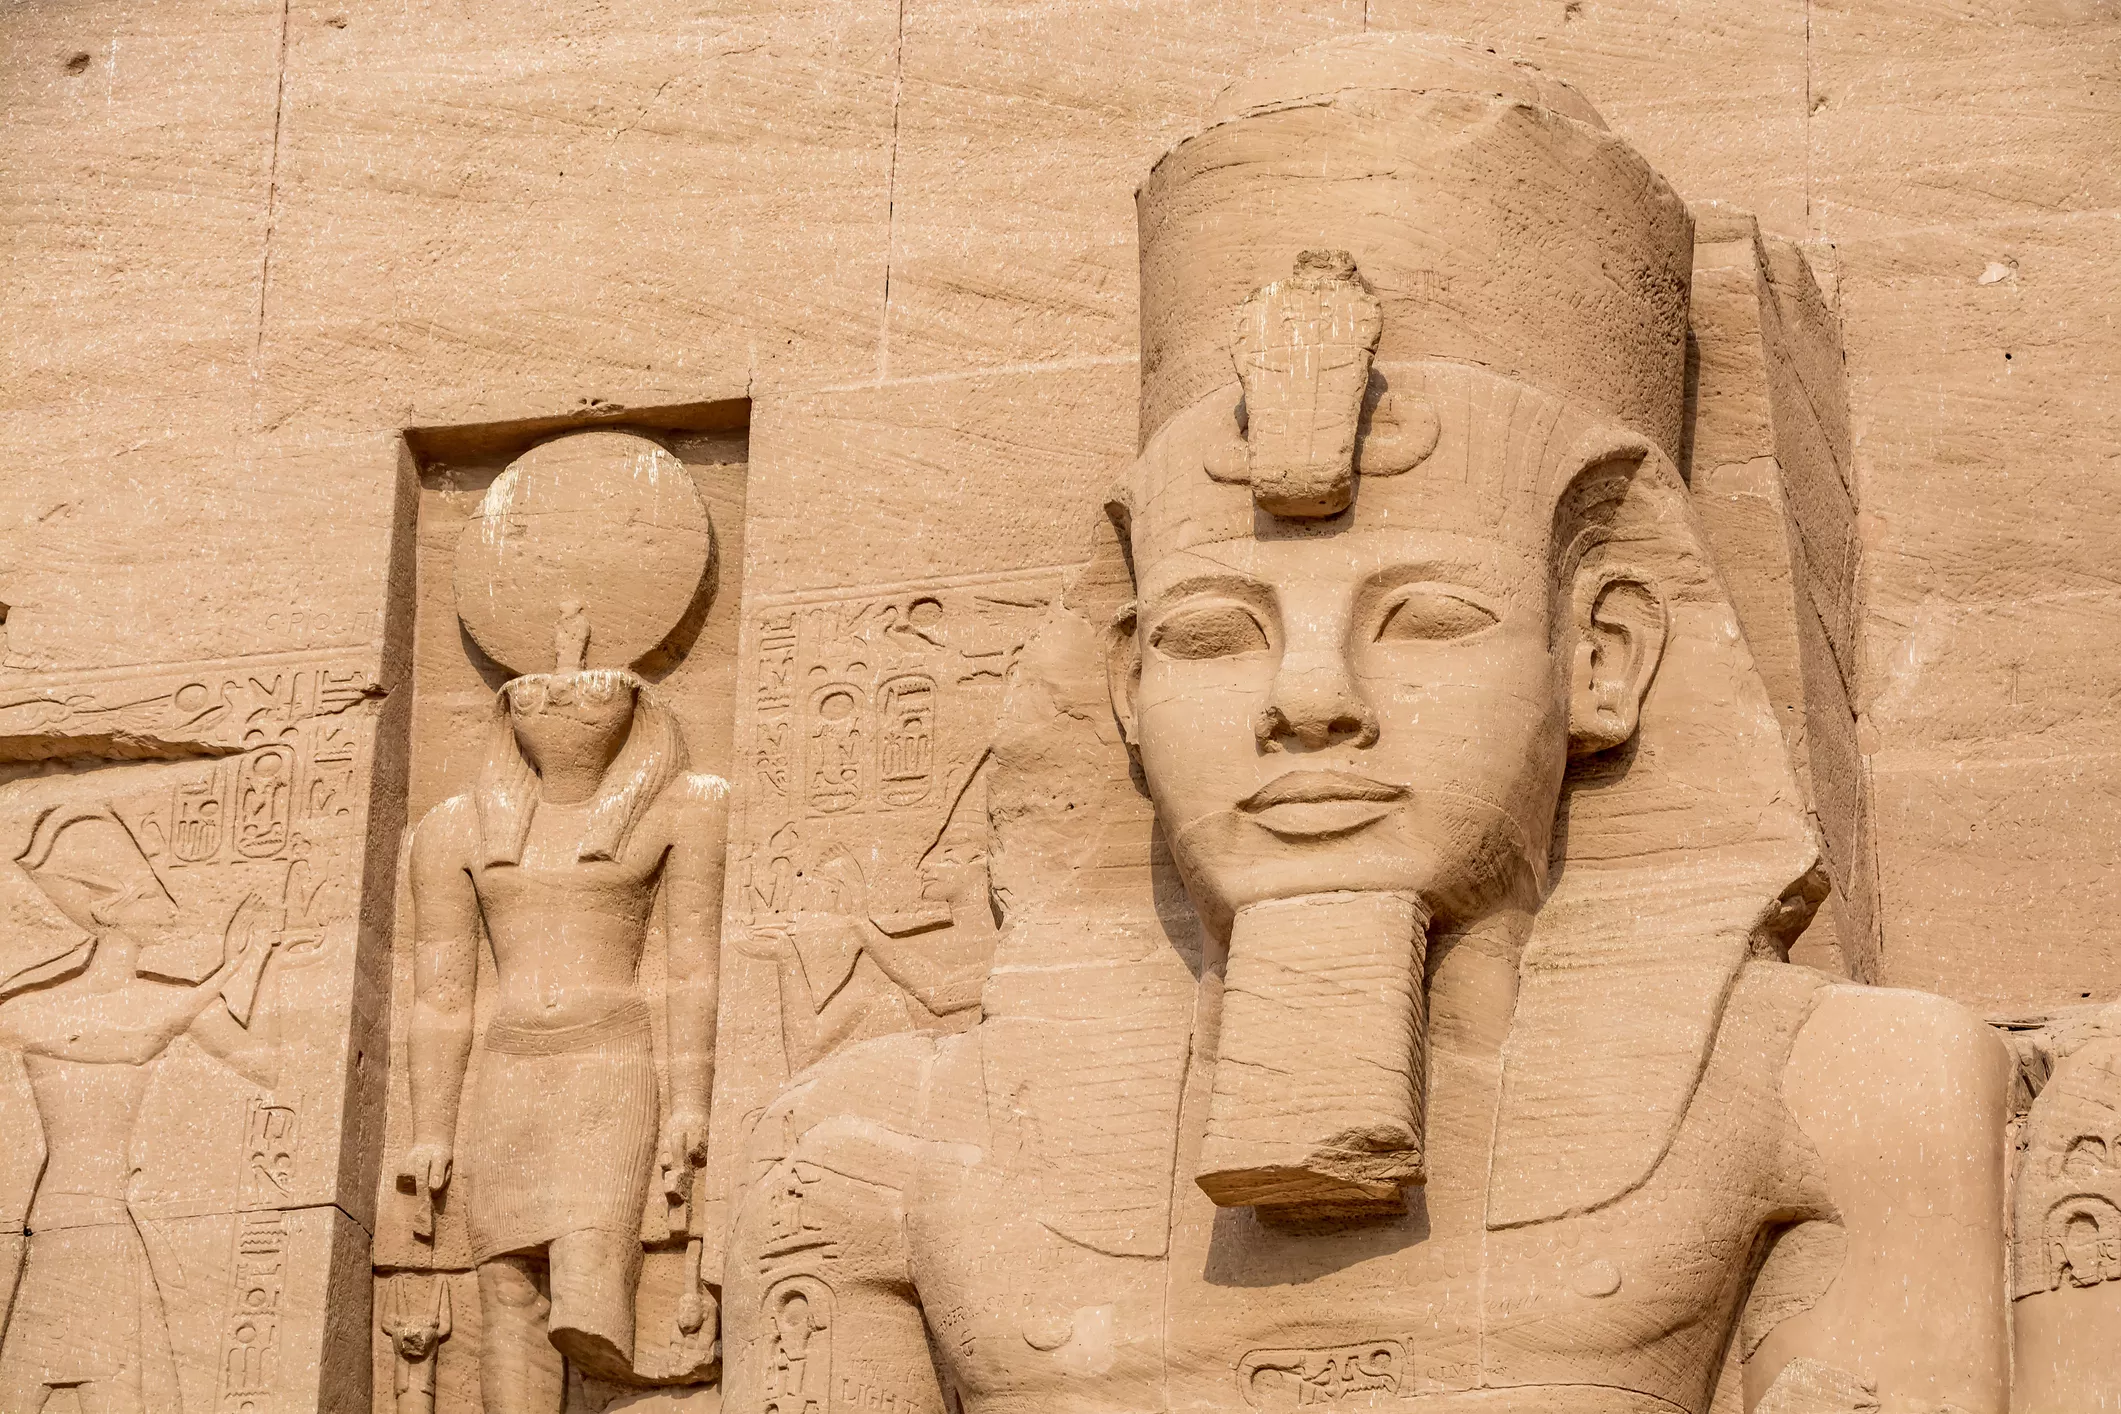 L’empremta del faraó Ramsès II, en forma d’efígies i obeliscs com el de Luxor, és ben visible des del nord de Síria fins a l’actual Sudan